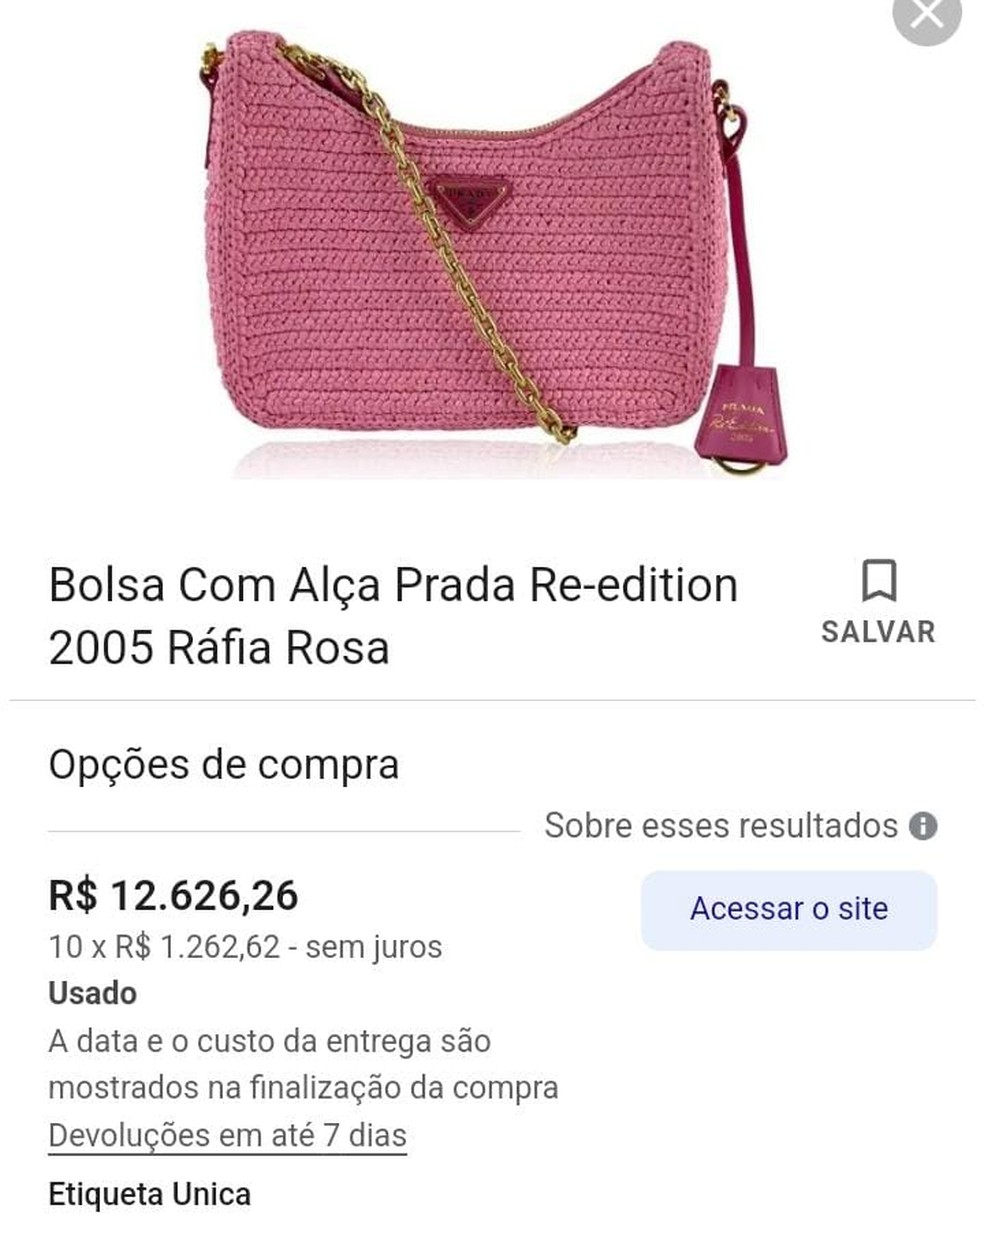 Bolsa Prada Re-edition Ráfia Rosa — Foto: Reprodução/Etiqueta Única